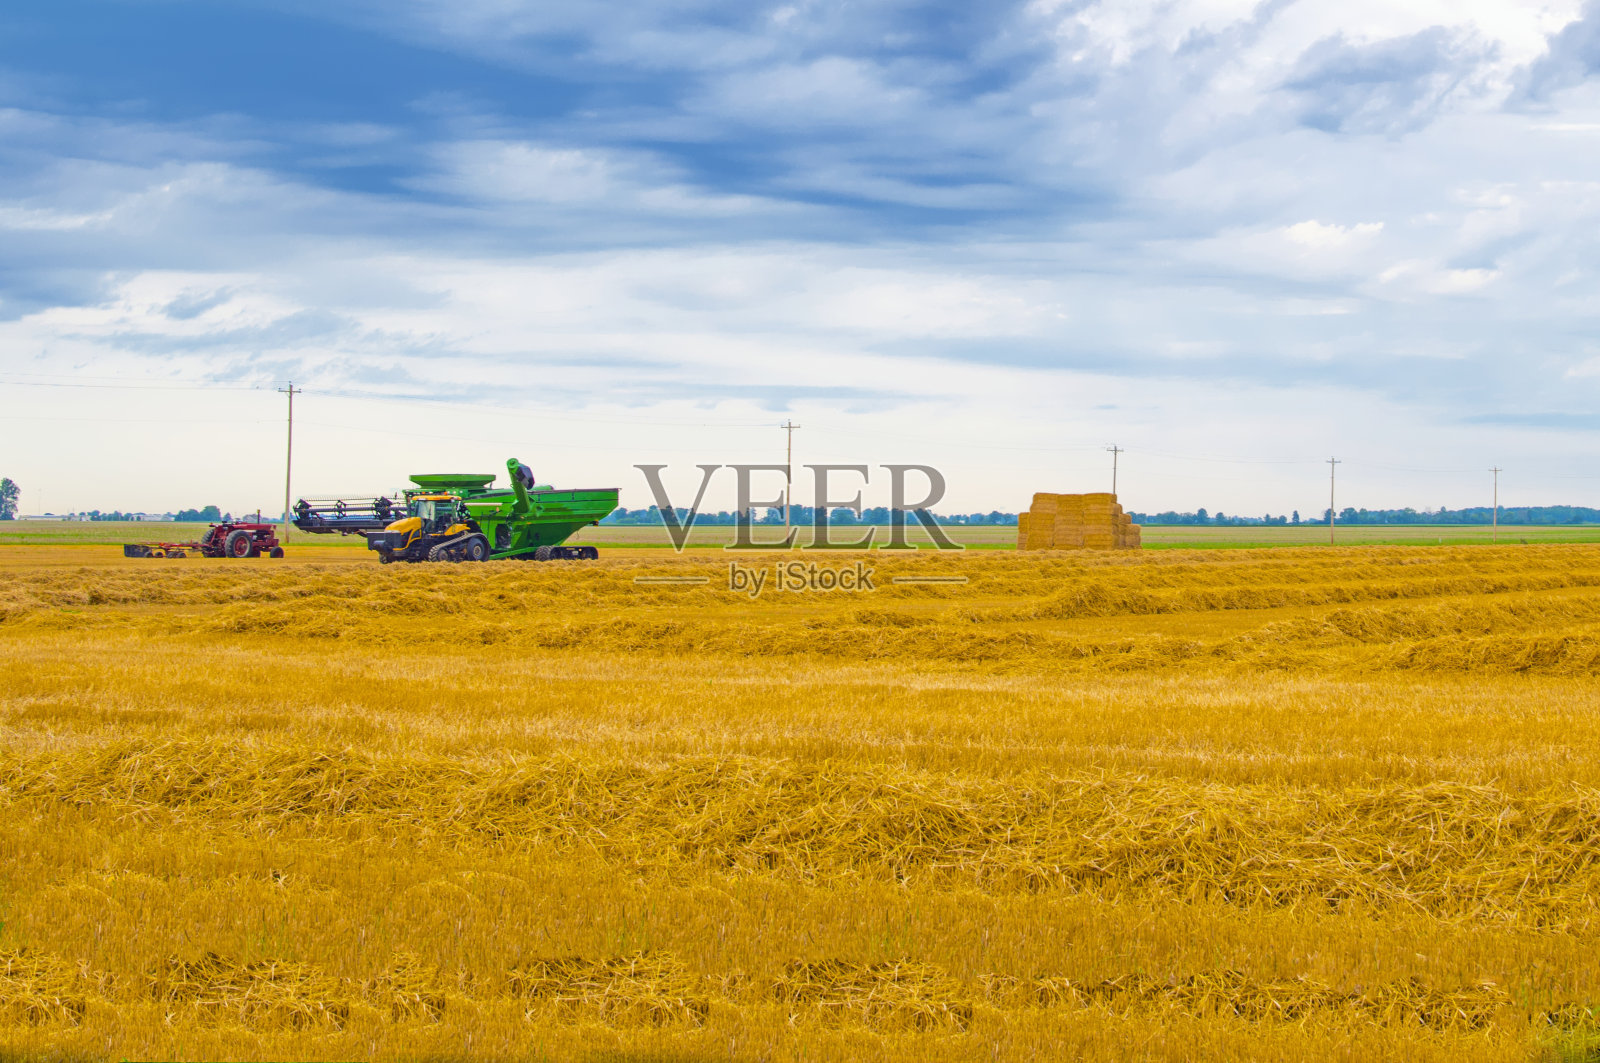 农业设备-小麦秸秆舀桶-印第安纳州蒂普顿县照片摄影图片